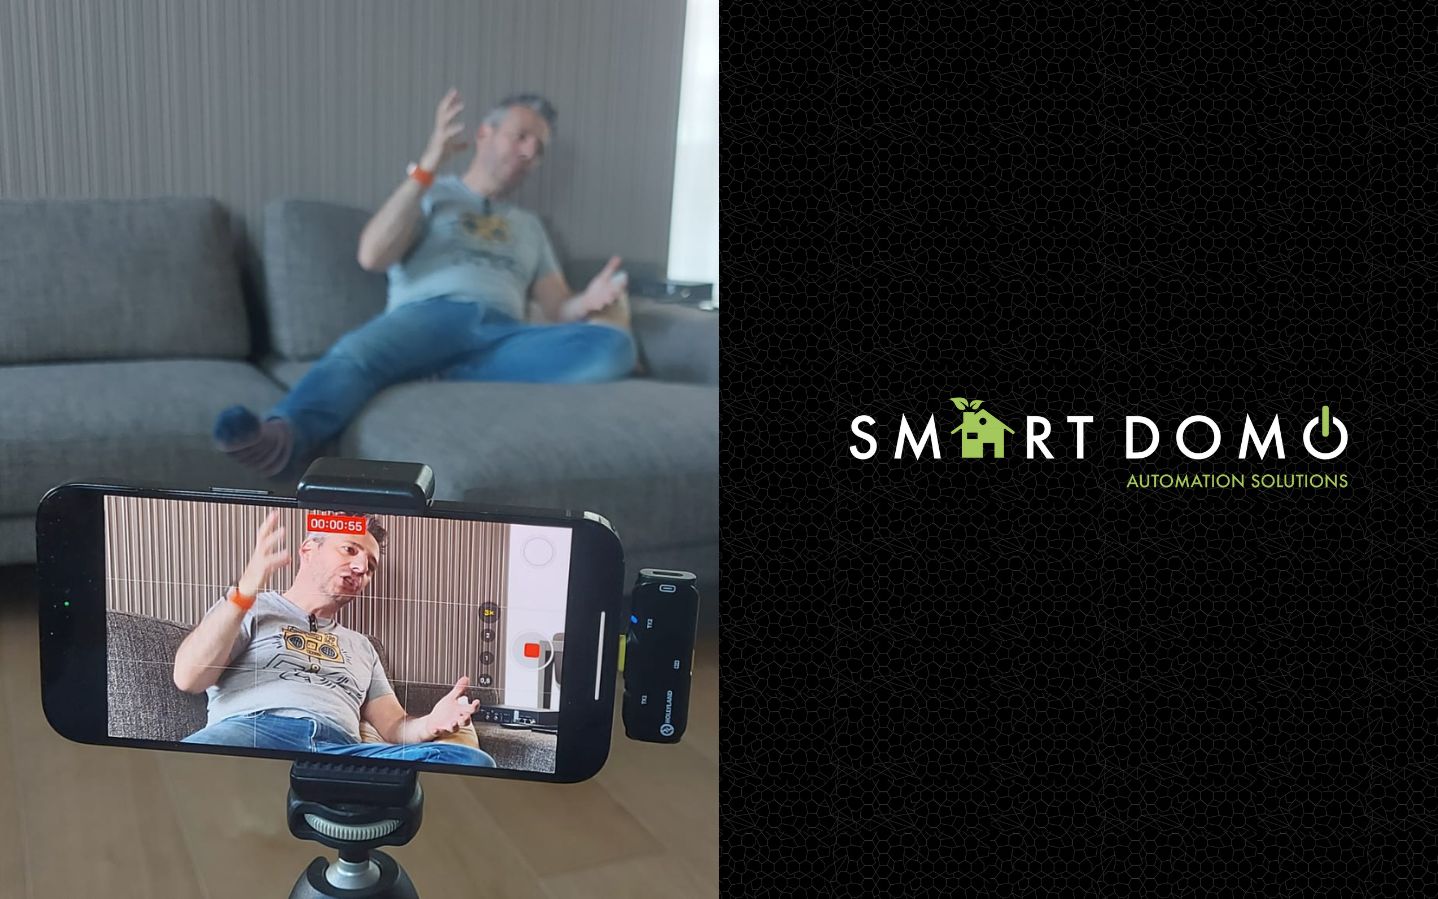 Anteprima: il nuovo impianto audio/video di Andrea Galeazzi | Smart Domo